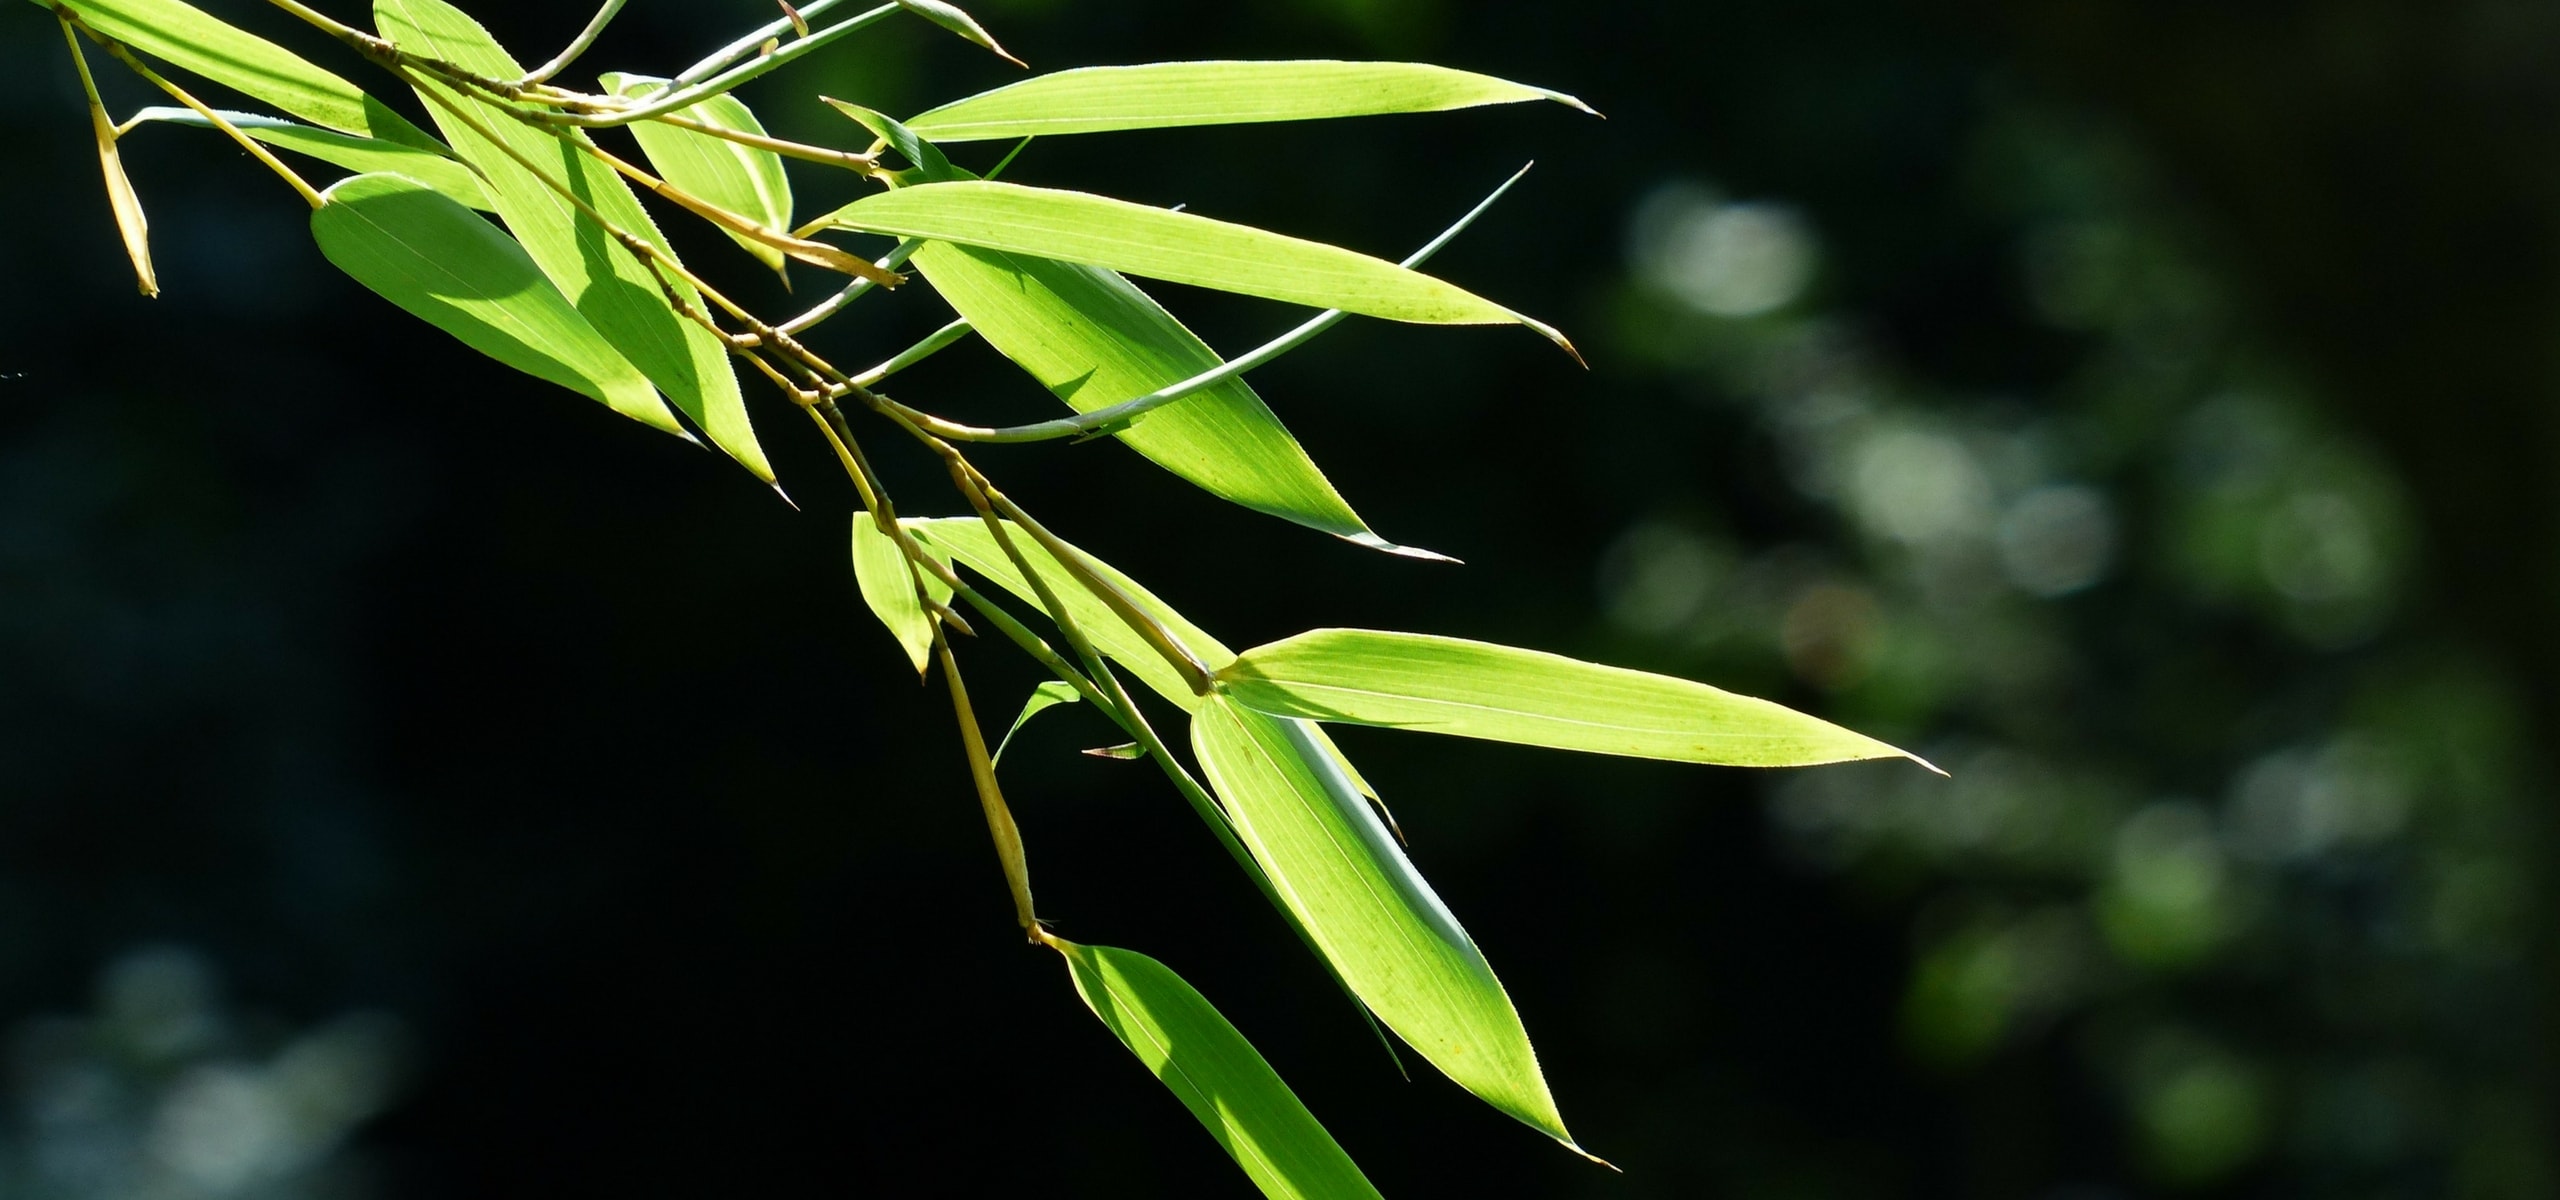 Bambou en pot : comment cultiver en 5 points - Promesse de Fleurs